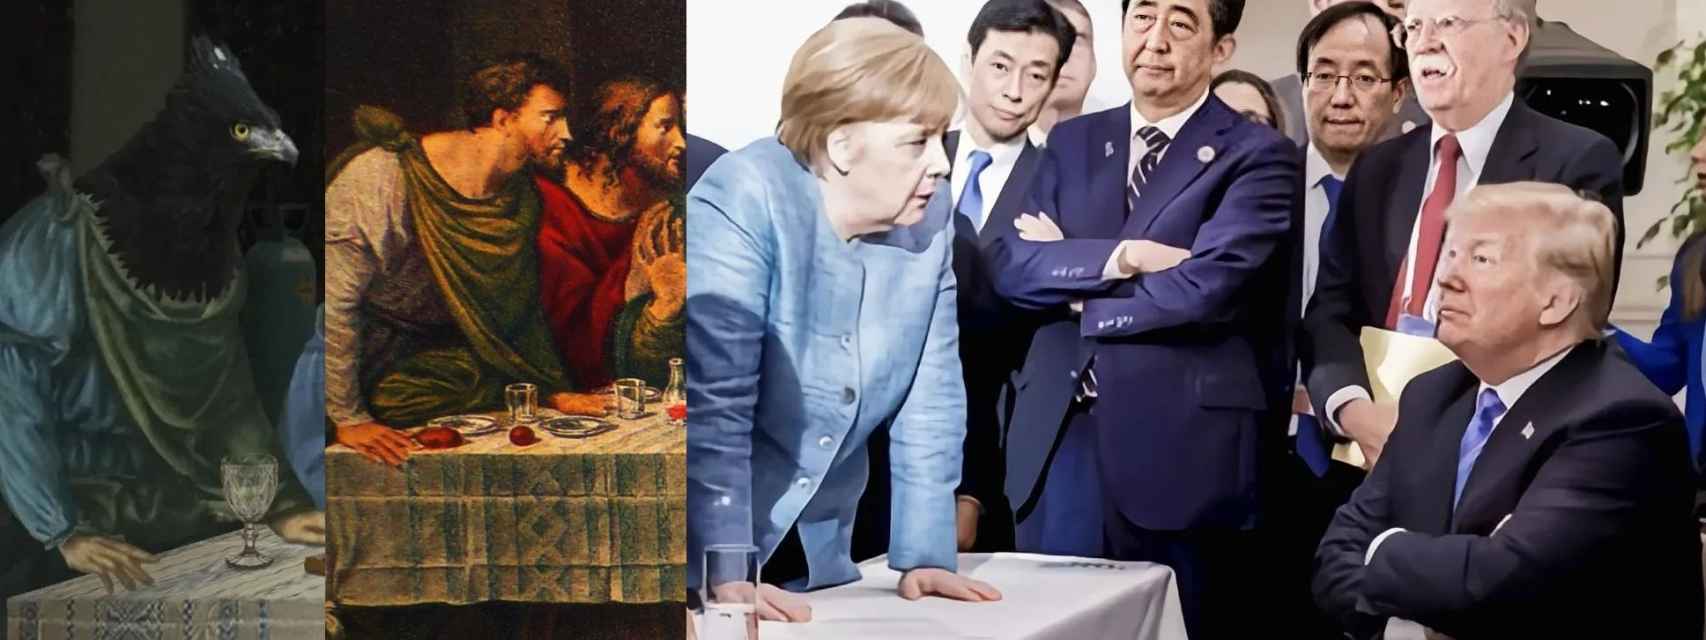 Detalle de La última cena del G7 basado en las posturas del apóstol Bartolomé y Angela Merkel.